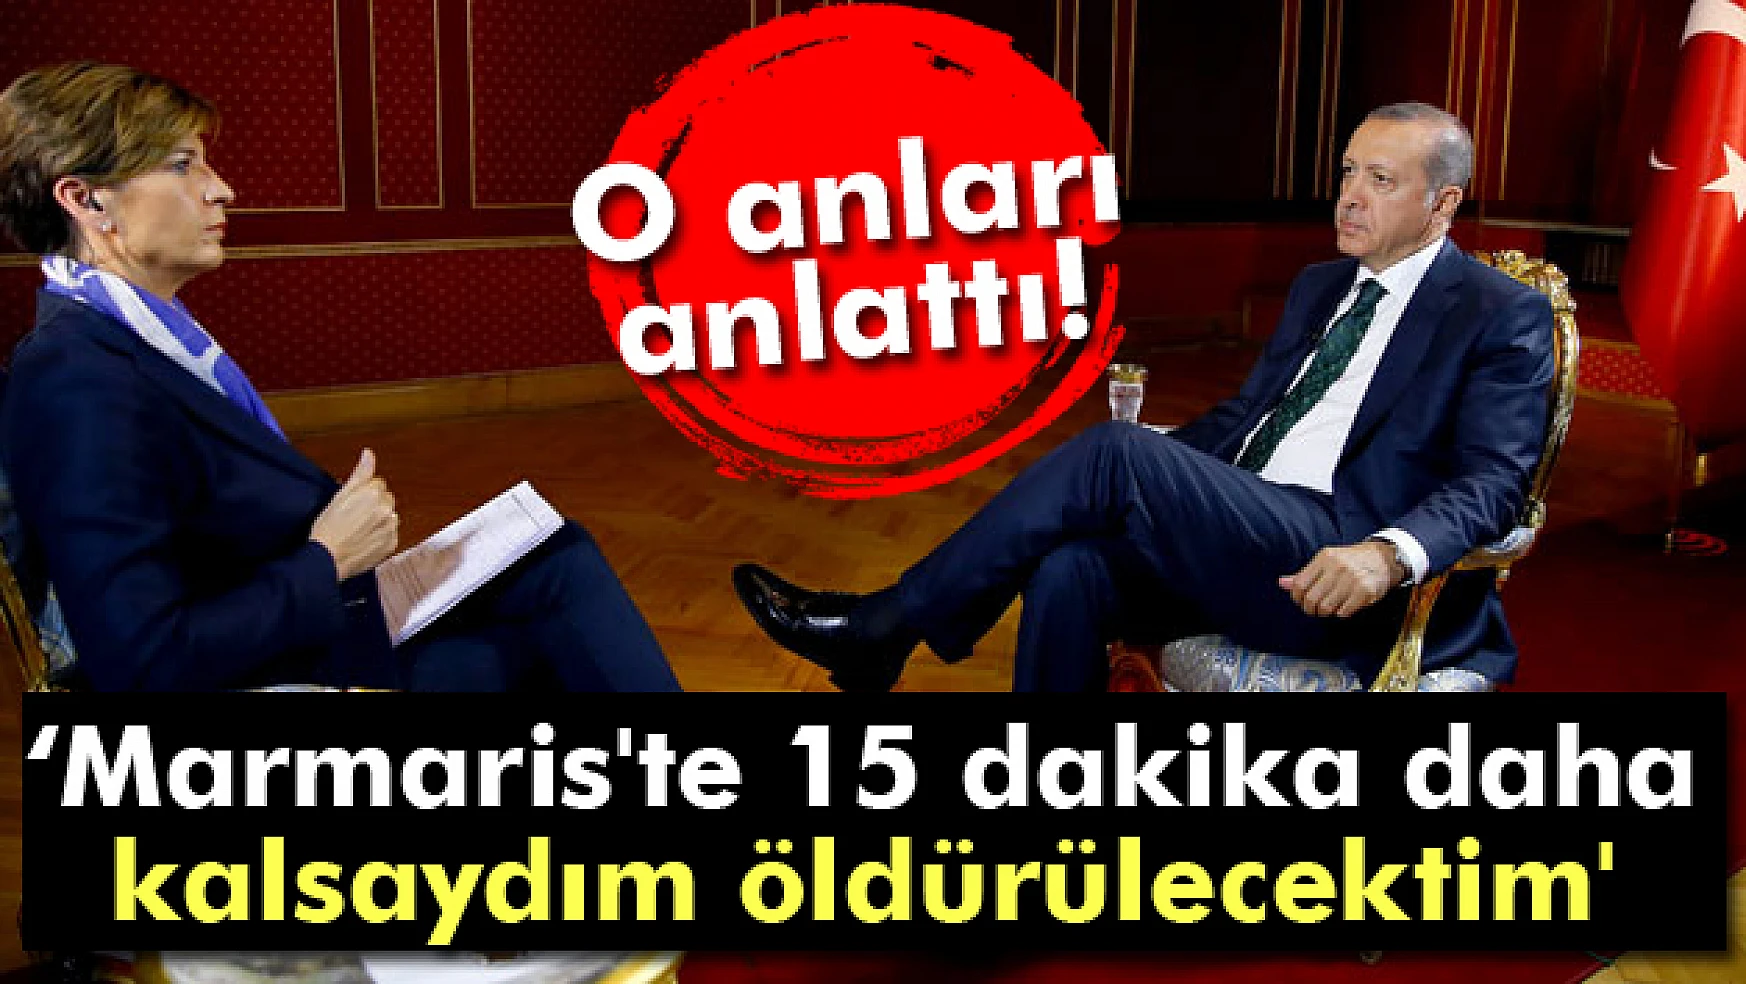 Erdoğan: 'Marmaris'te 15 dakika daha kalsaydım öldürülecektim'